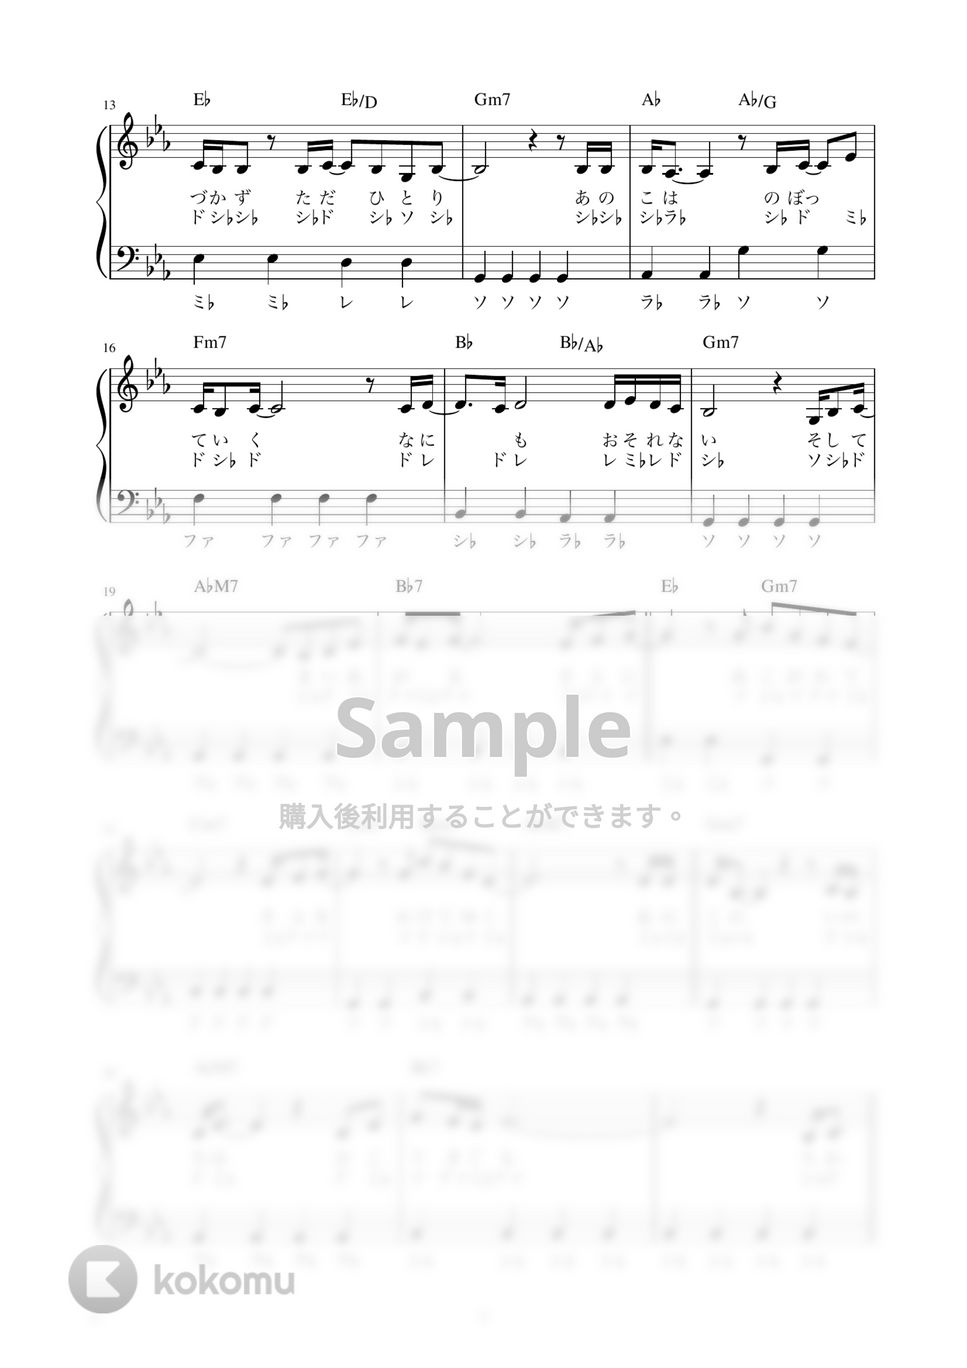 松任谷由実 - ひこうき雲 (かんたん / 歌詞付き / ドレミ付き / 初心者) by piano.tokyo